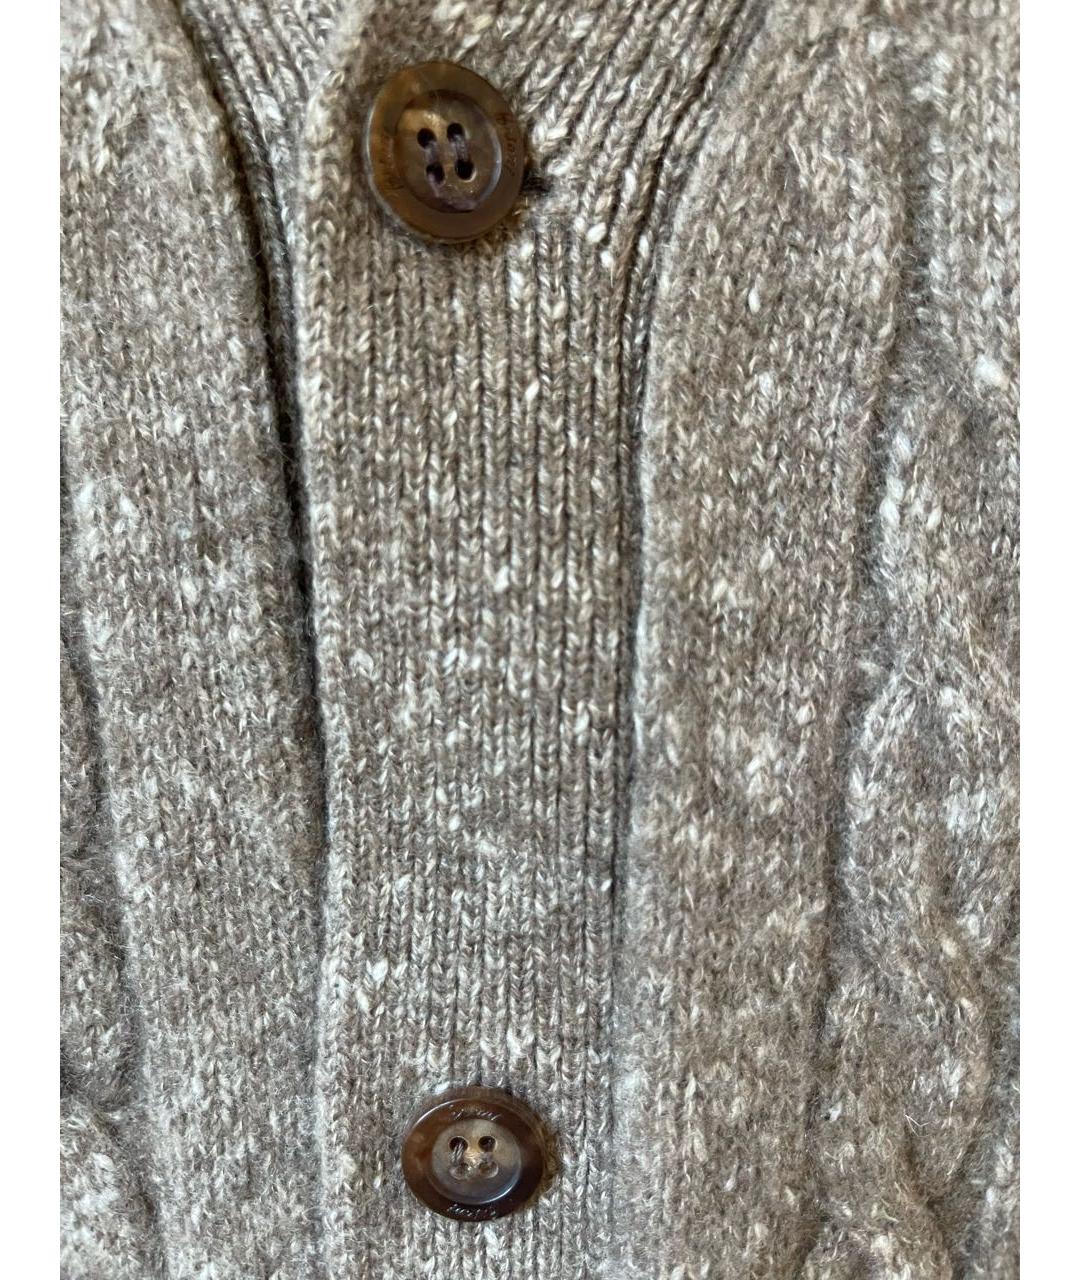 BRIONI Синий кашемировый джемпер / свитер, фото 2